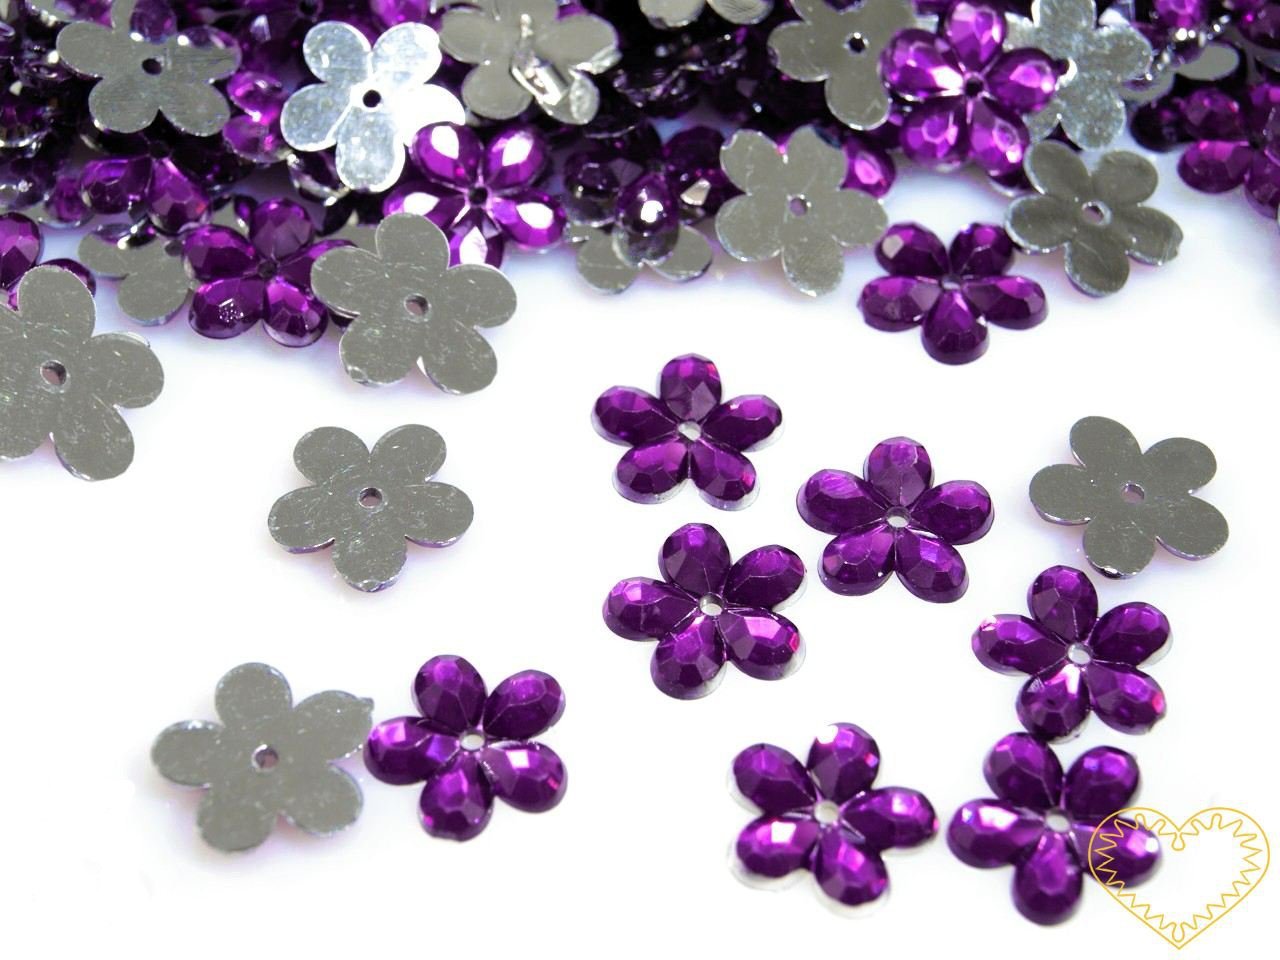 Našívací kytičky fialové Ø 11 mm -20 ks. Vhodné k dekorování tašek, kabelek, triček, klobouků, čepic, bot, bytového textilu, při výrobě maňásků, panenek, přáníček ad.